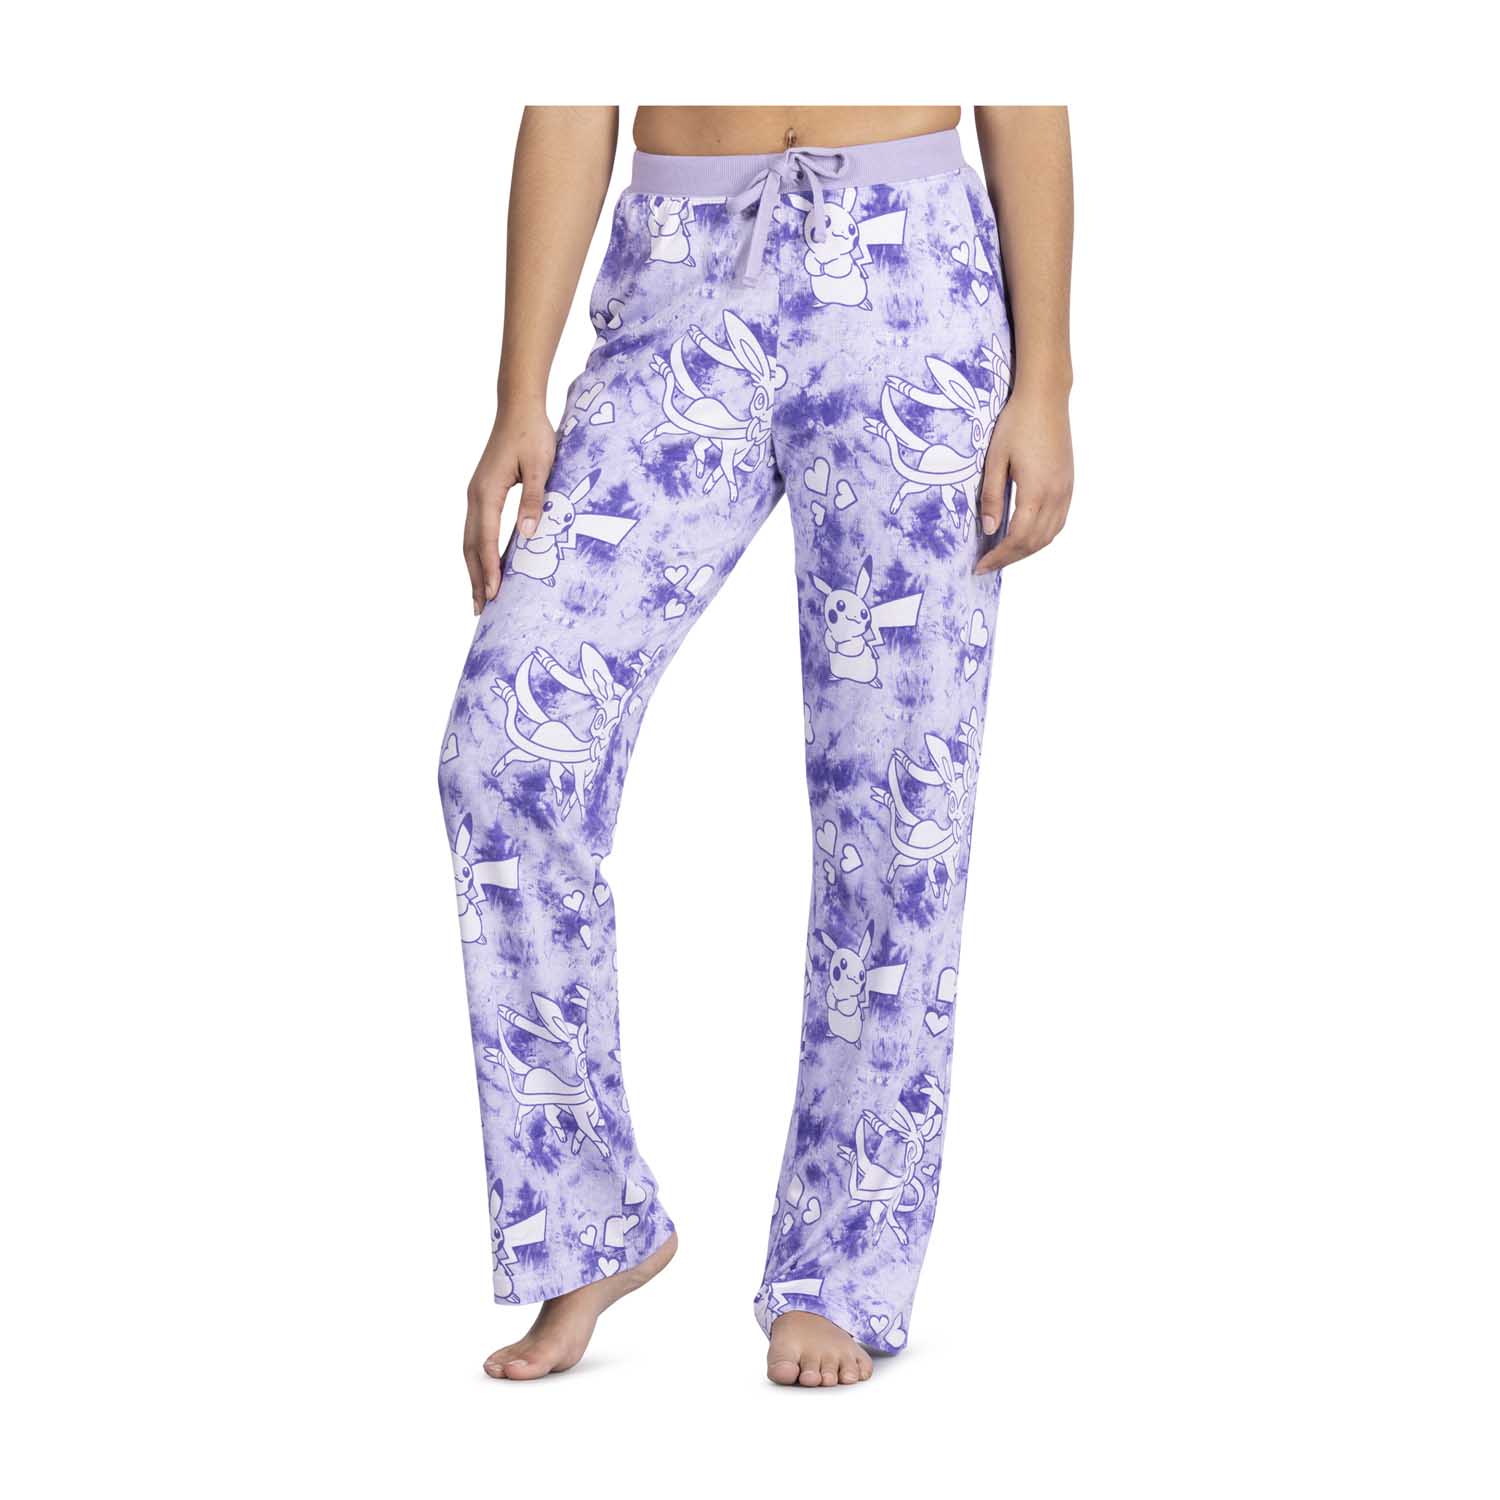 Pikachu & Sylveon Lavender Tie-Dye Lounge Pants - Women